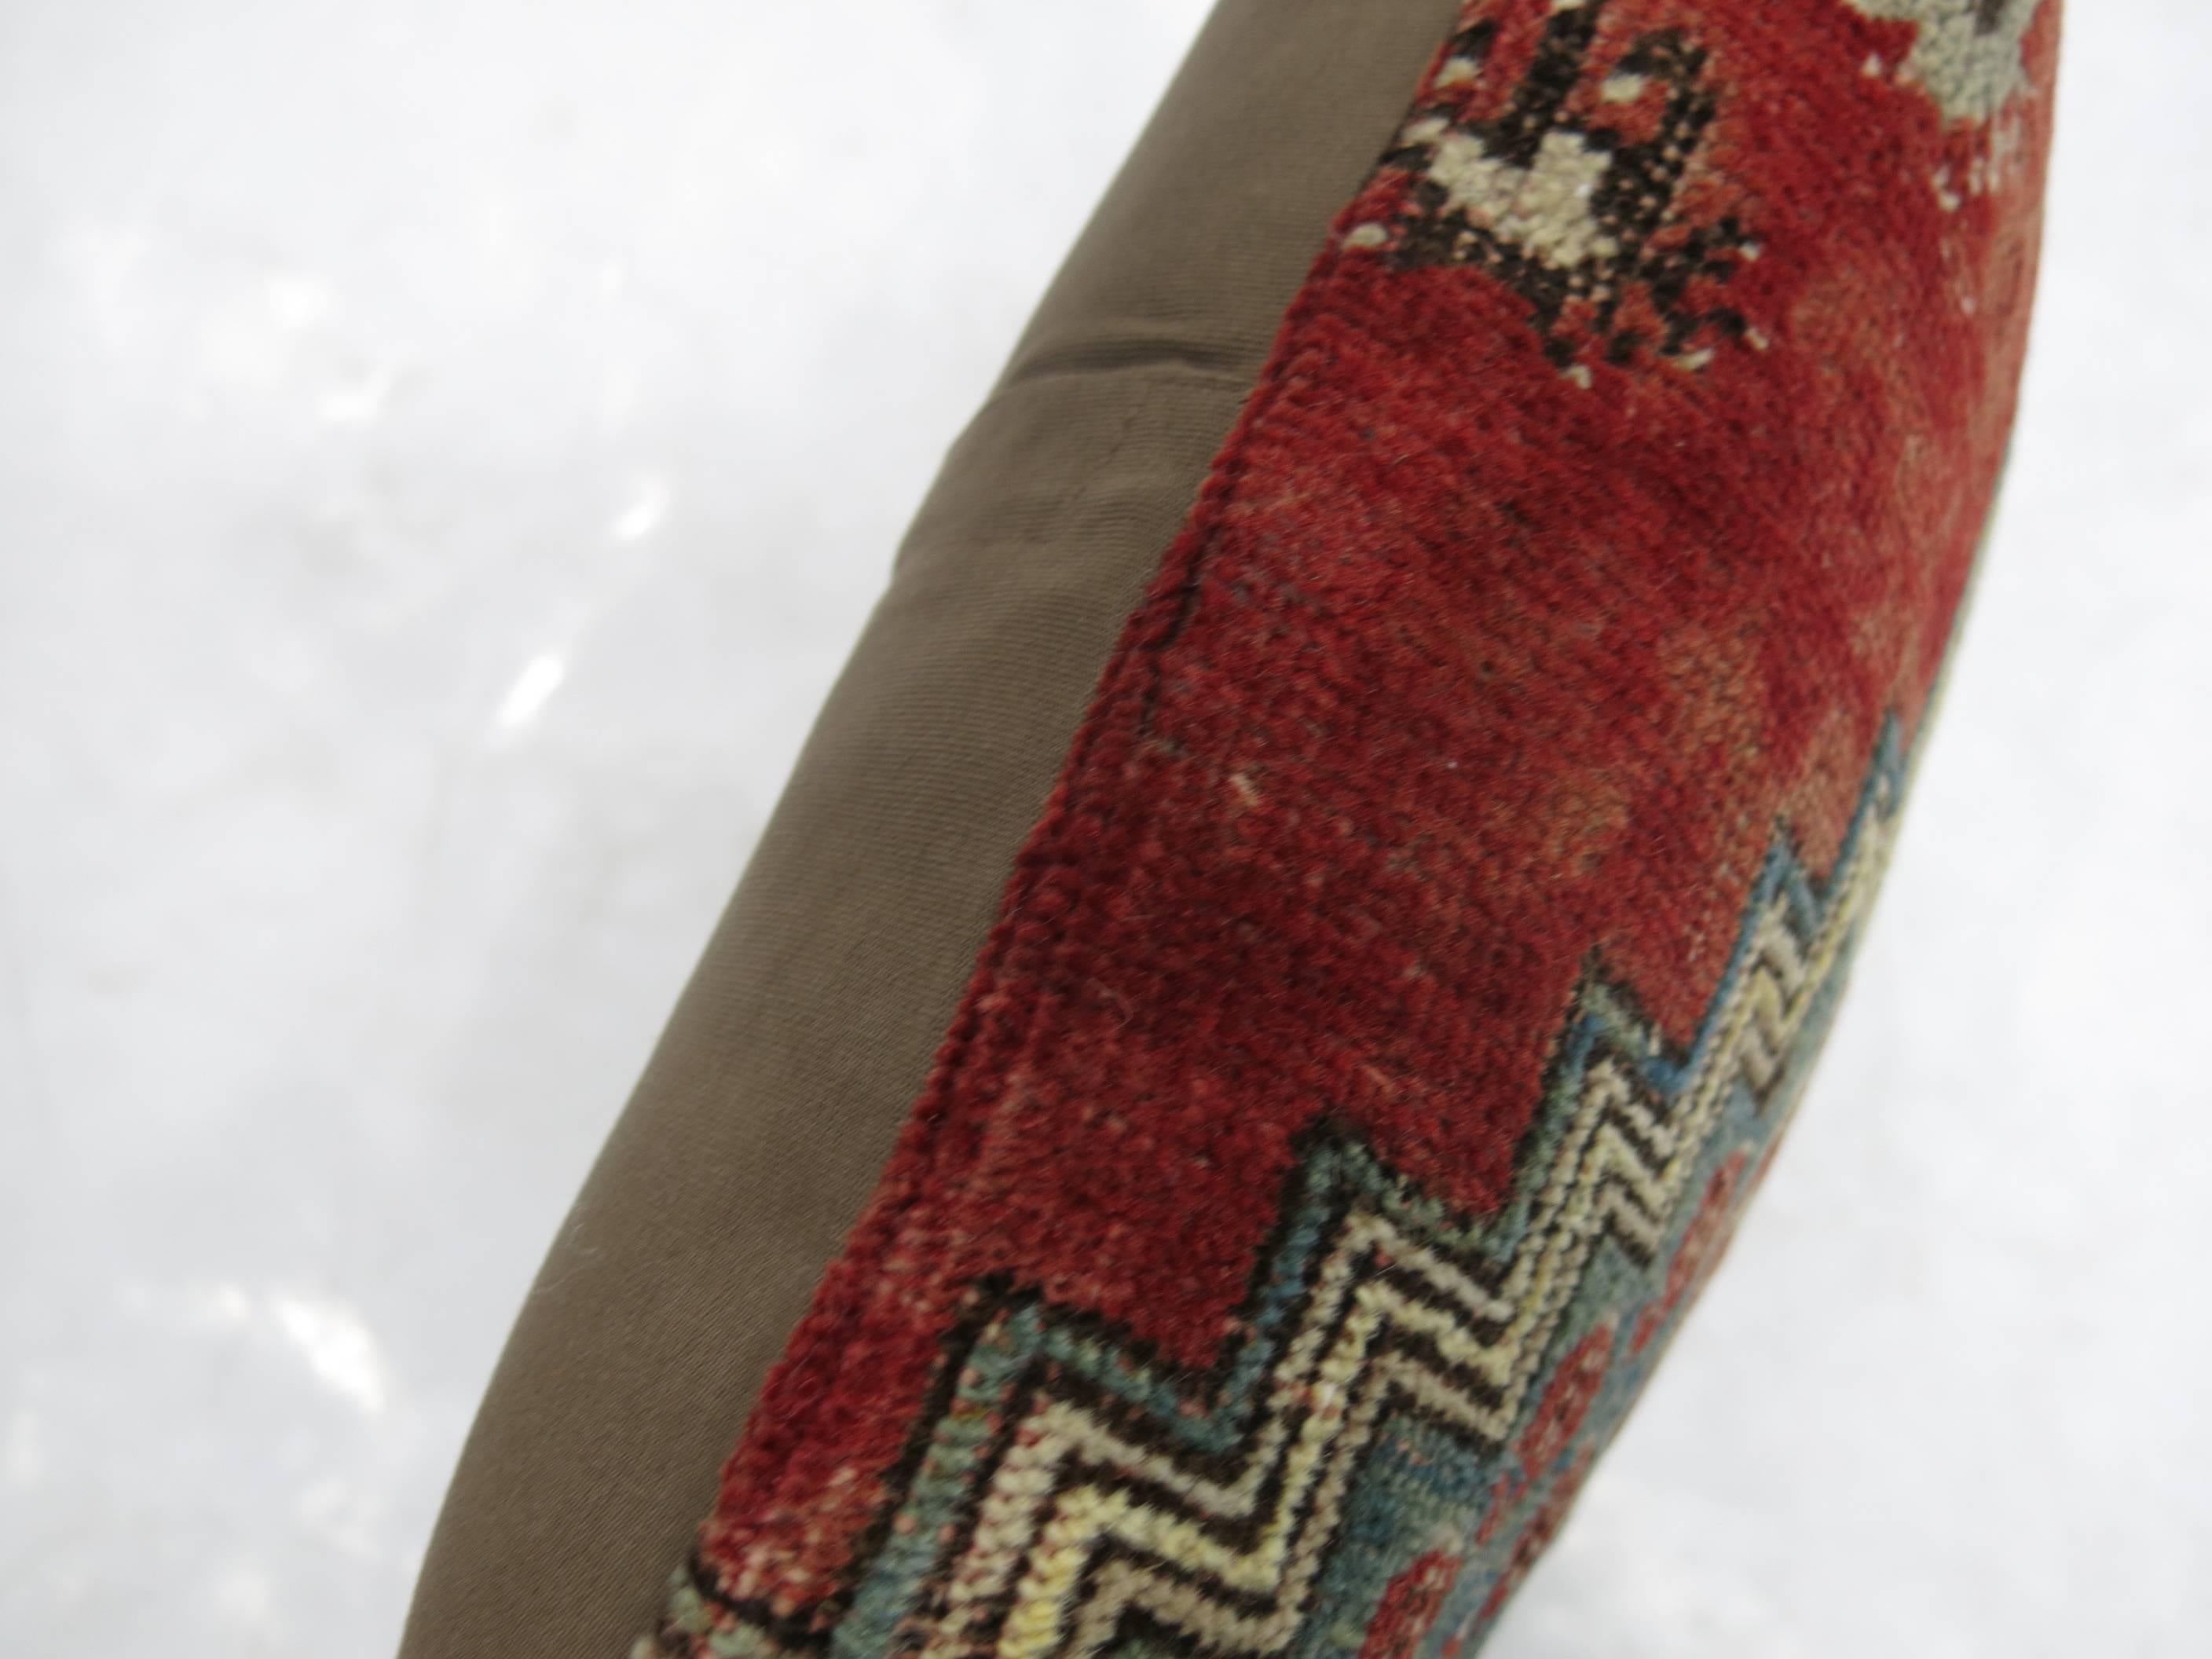 Coussin de taille lombaire fabriqué à partir d'un tapis turc vintage.

14'' x 21''